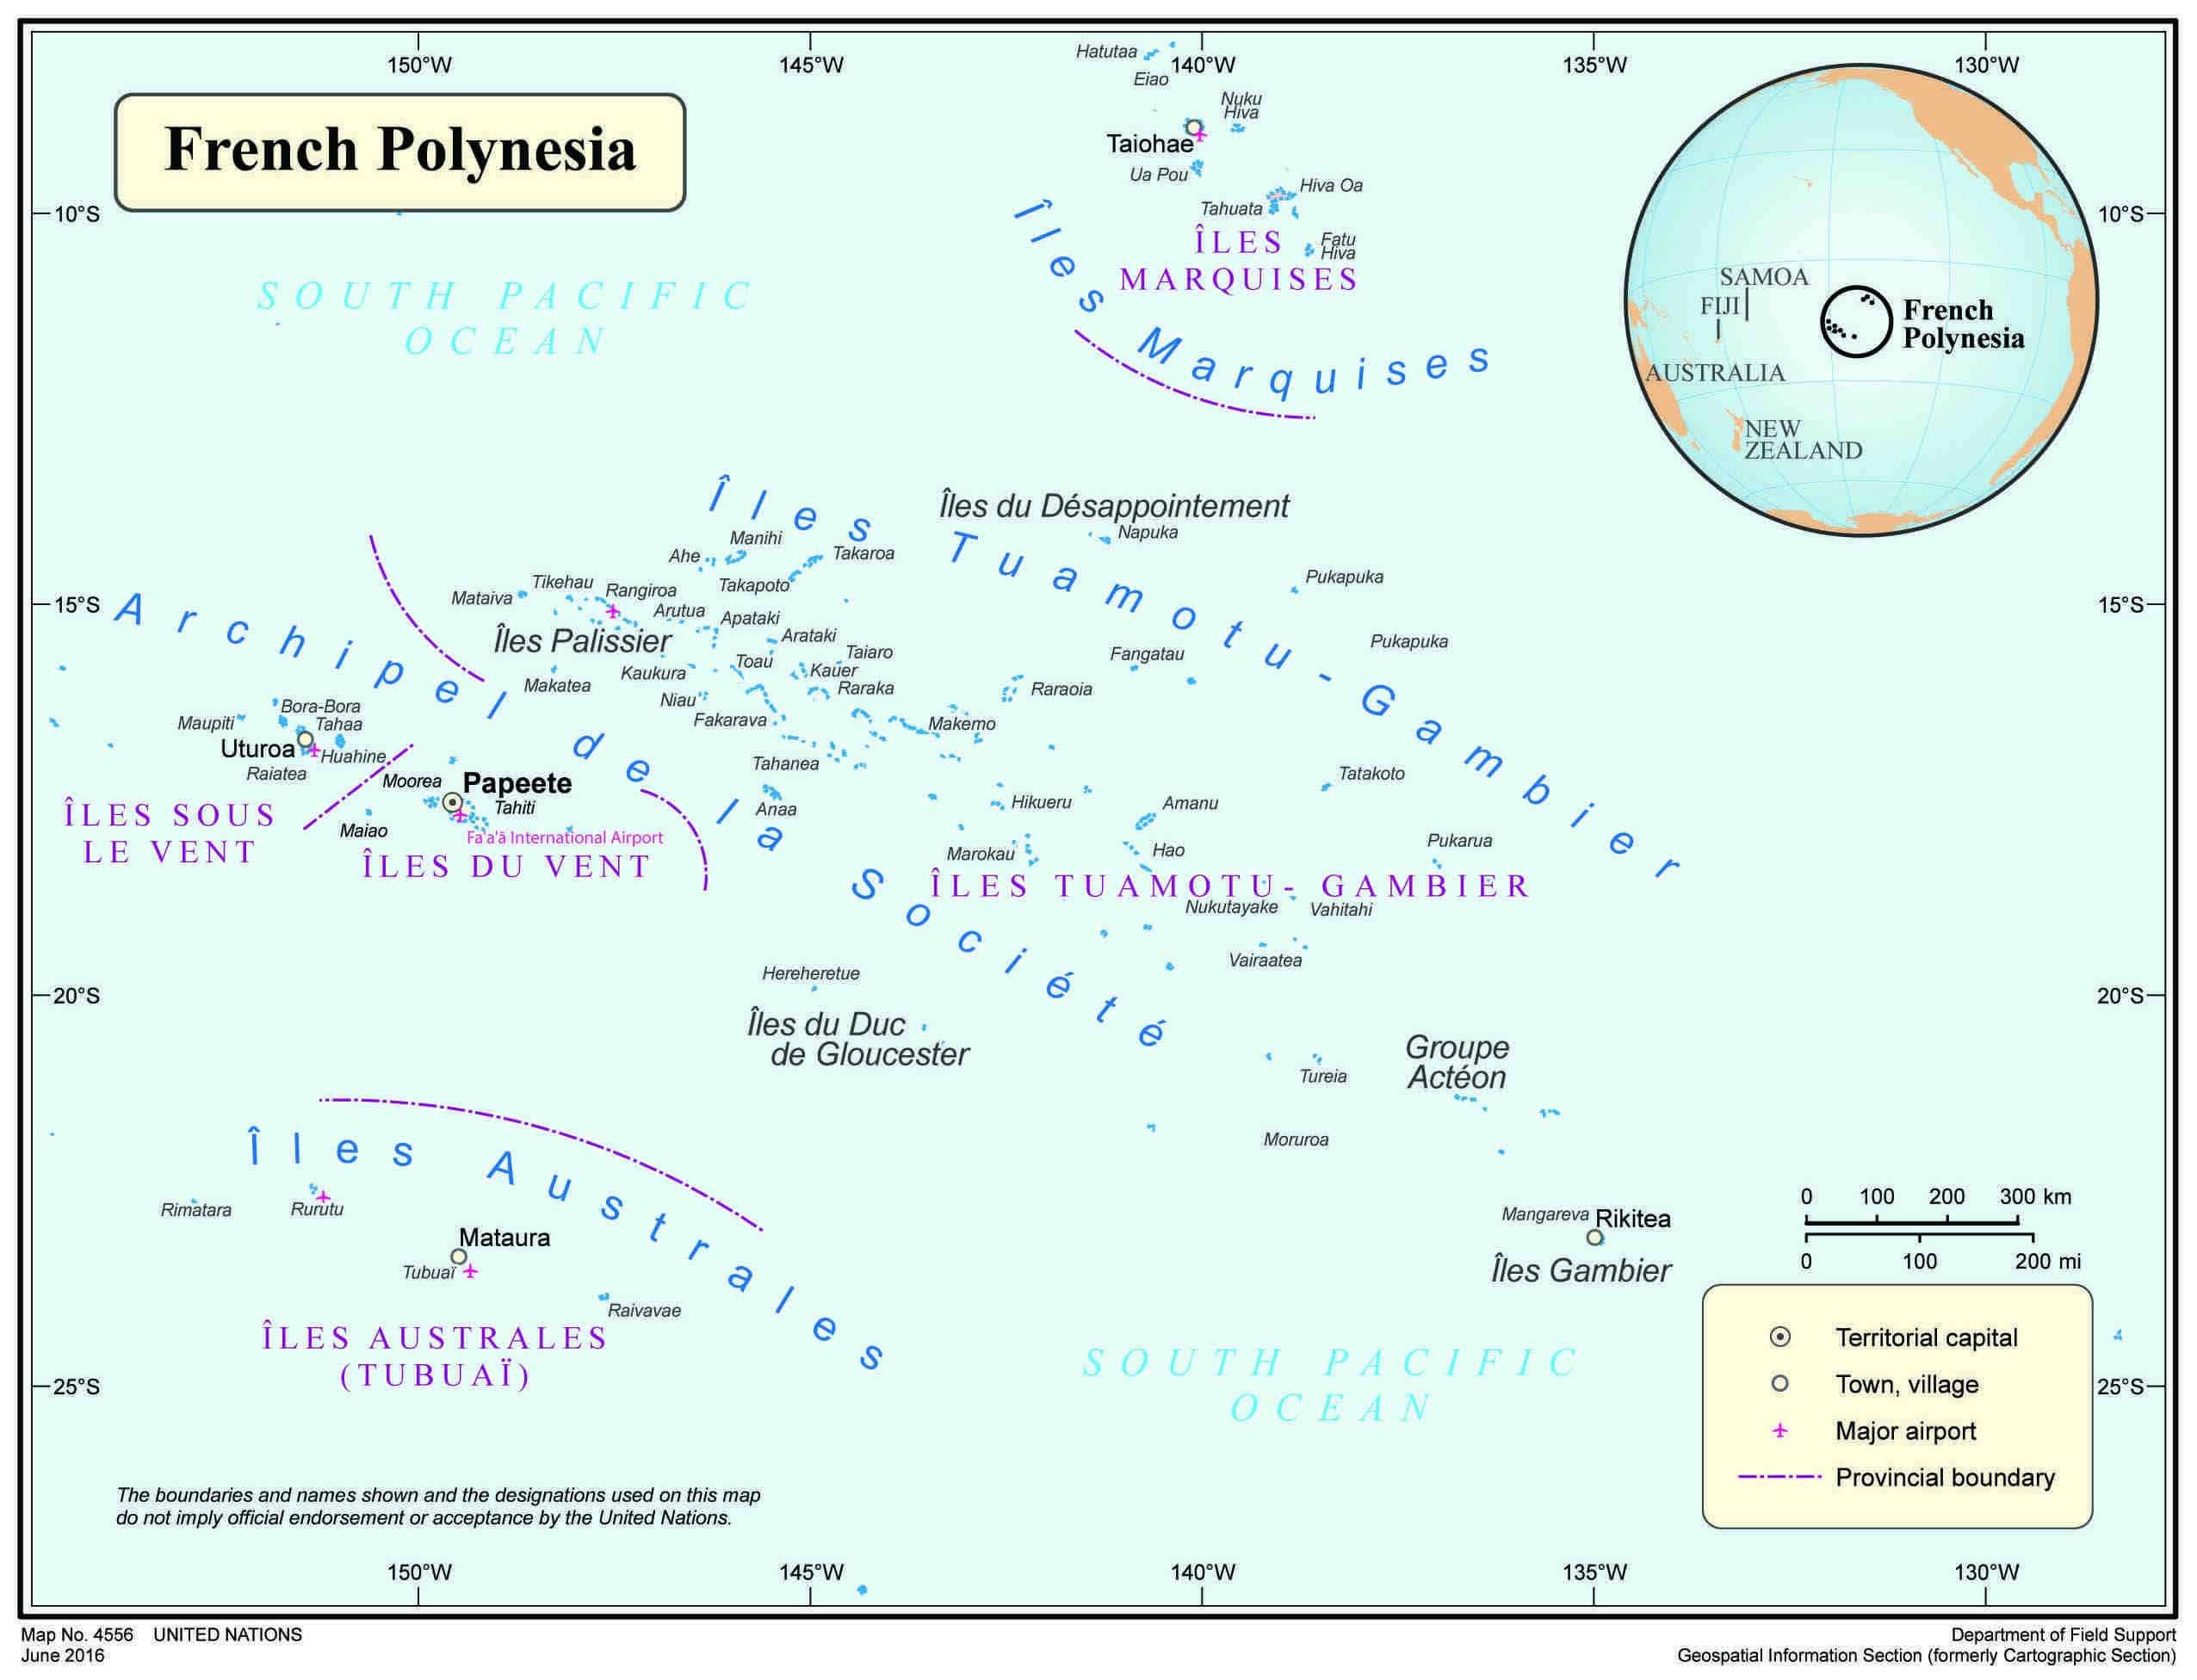 Siapa yang menjajah Polinesia Prancis?